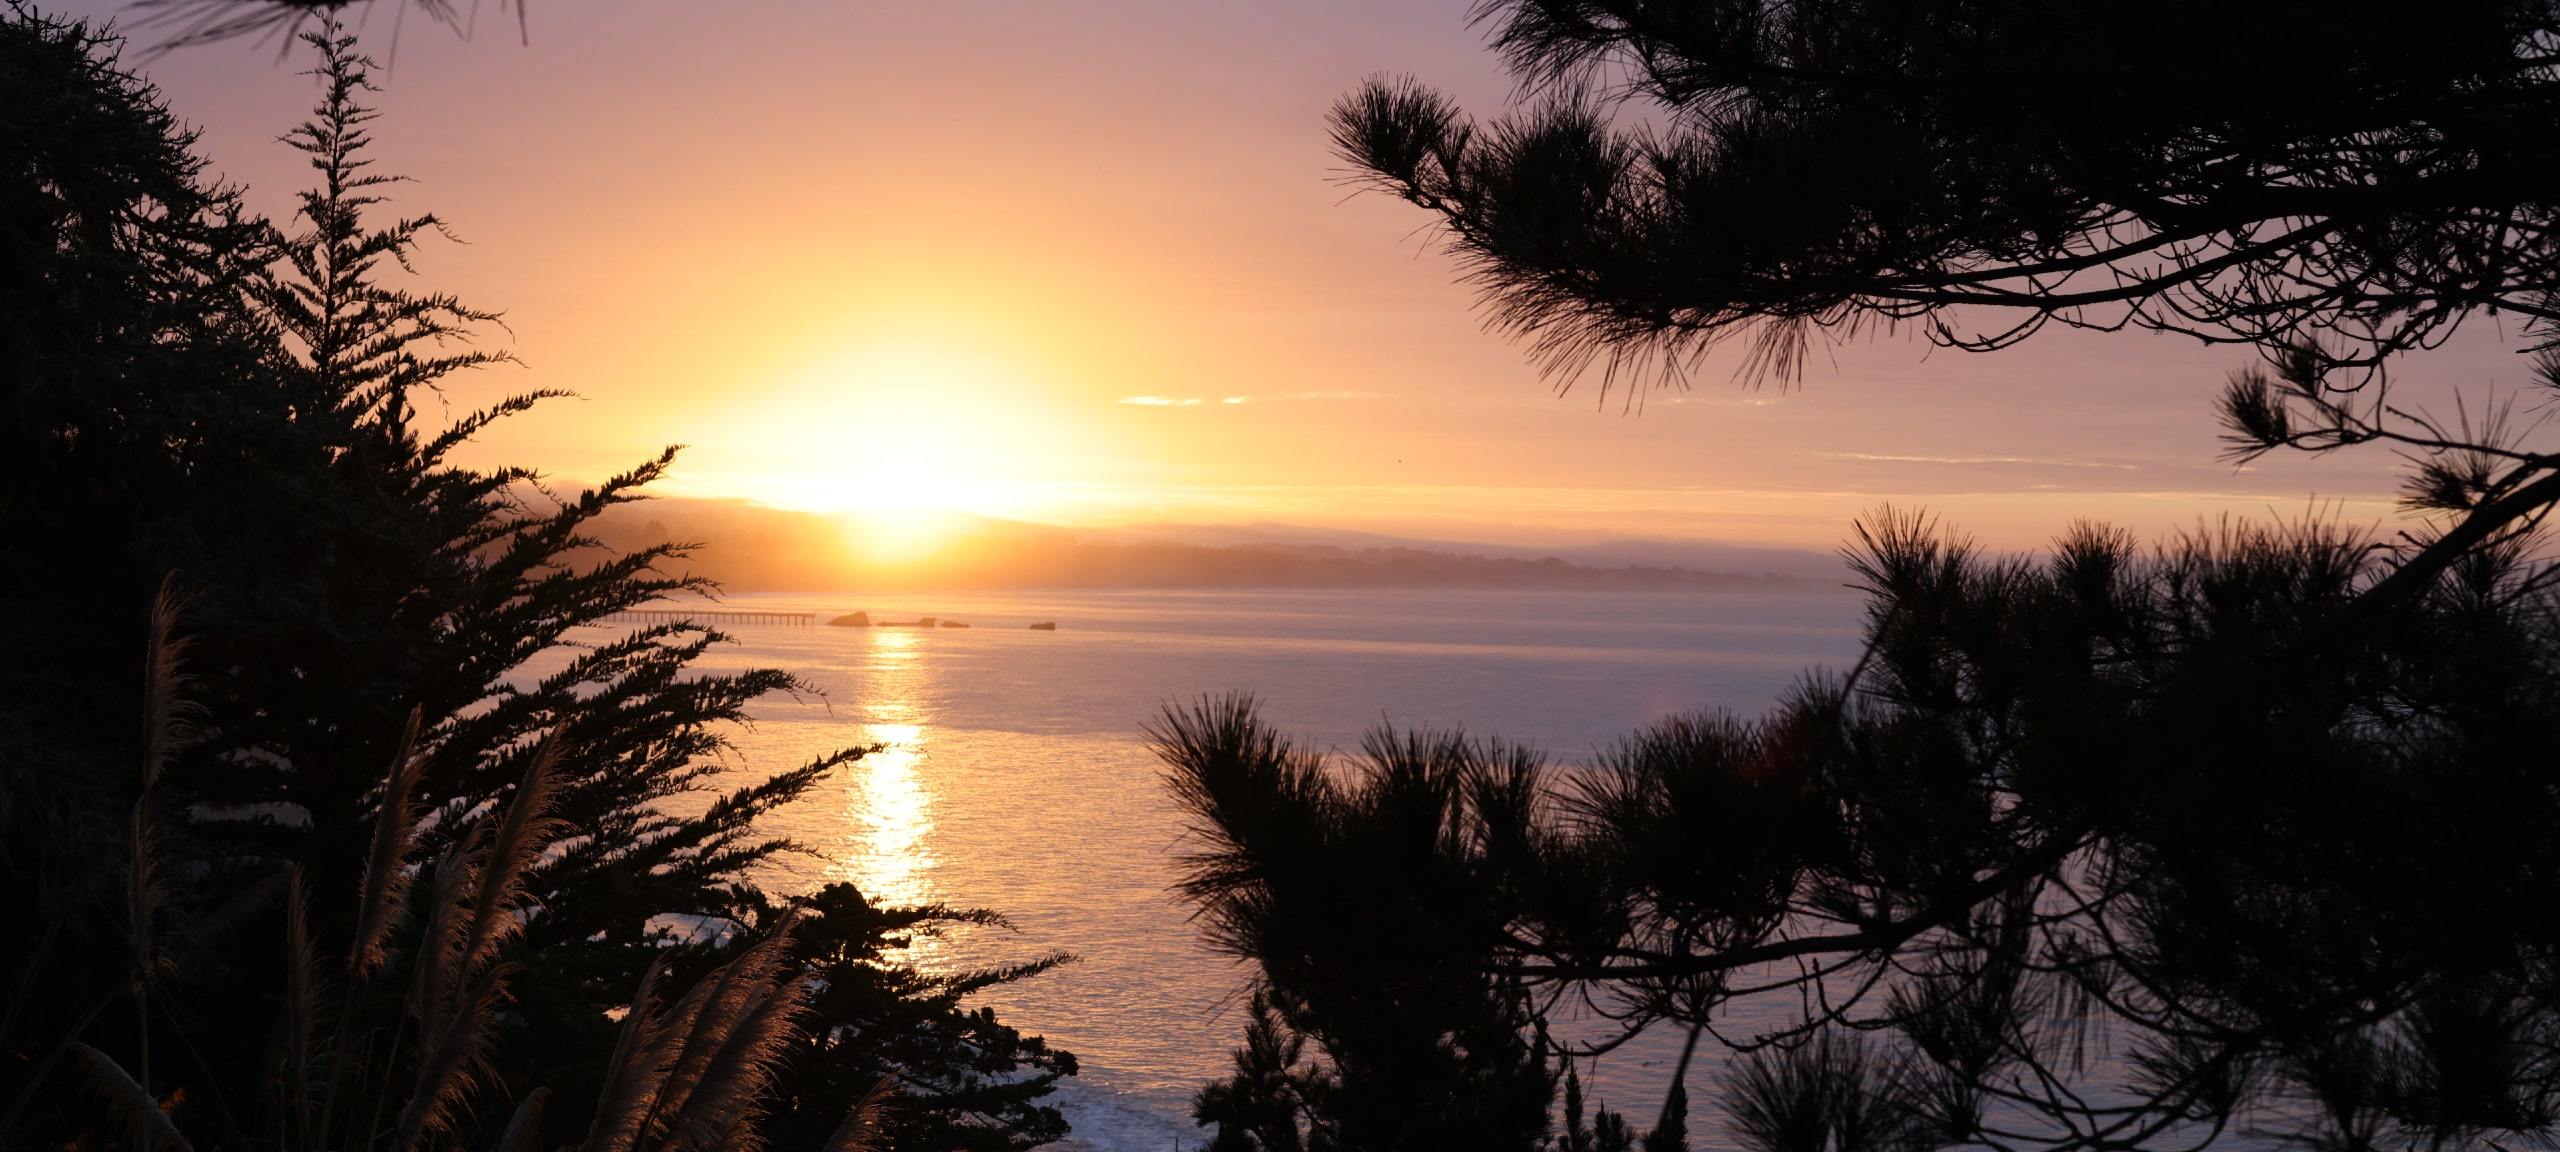 Sunset over Monterey Bay near Soquel, CA